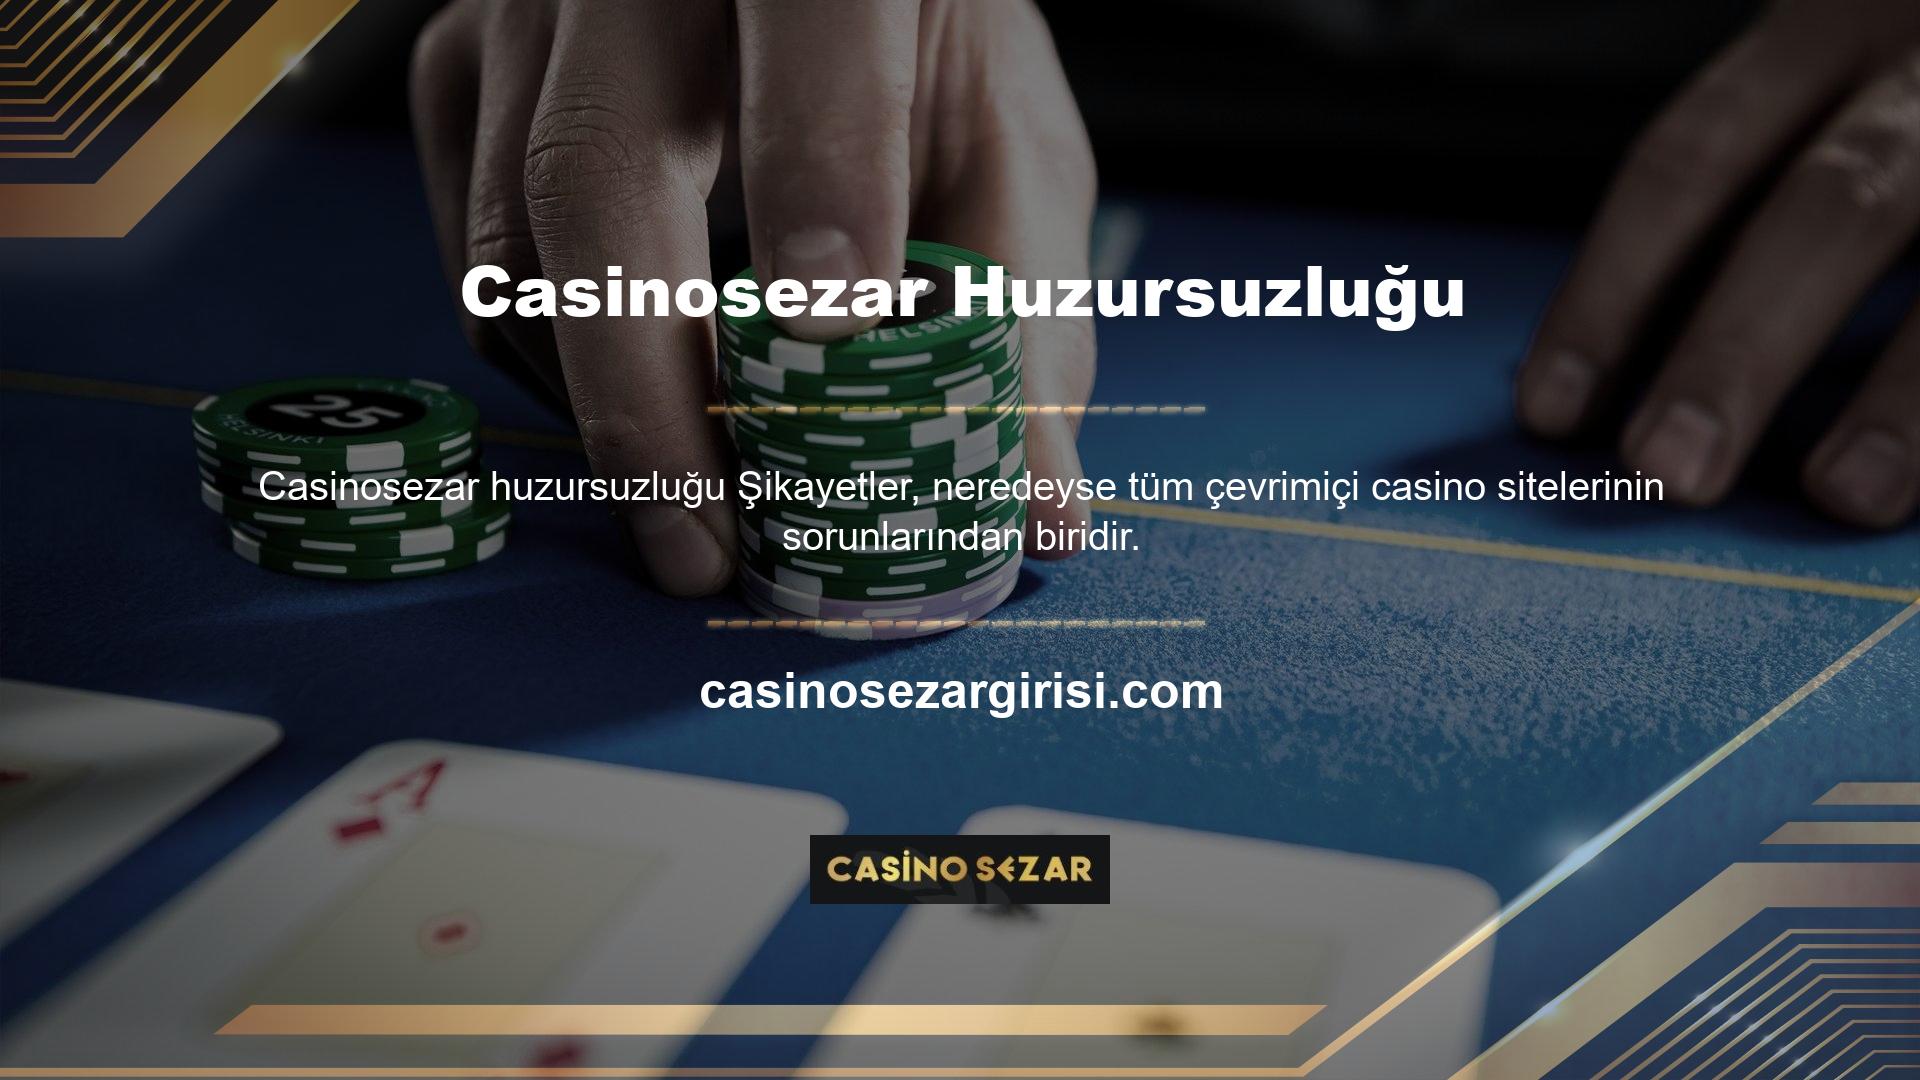 Yazının başında da belirttiğimiz gibi Casinosezar bahis sitesi kullanıcı merkezli bir firmadır